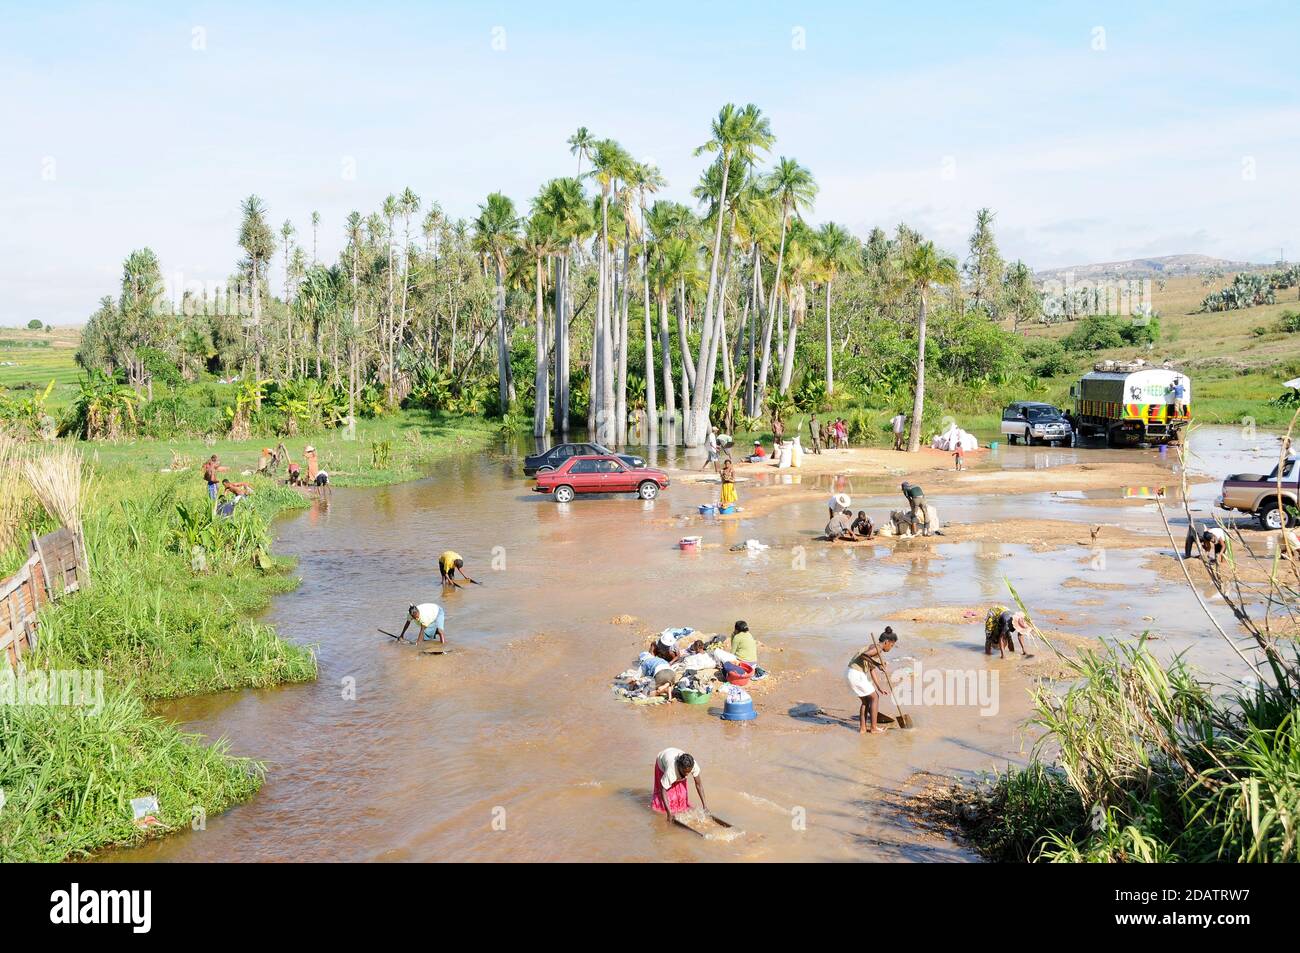 Mineros que utilizan agua de río para separar los zafiros de la grava han extraído de pozos que rodean la ciudad de Ilakaka, Madagascar Foto de stock